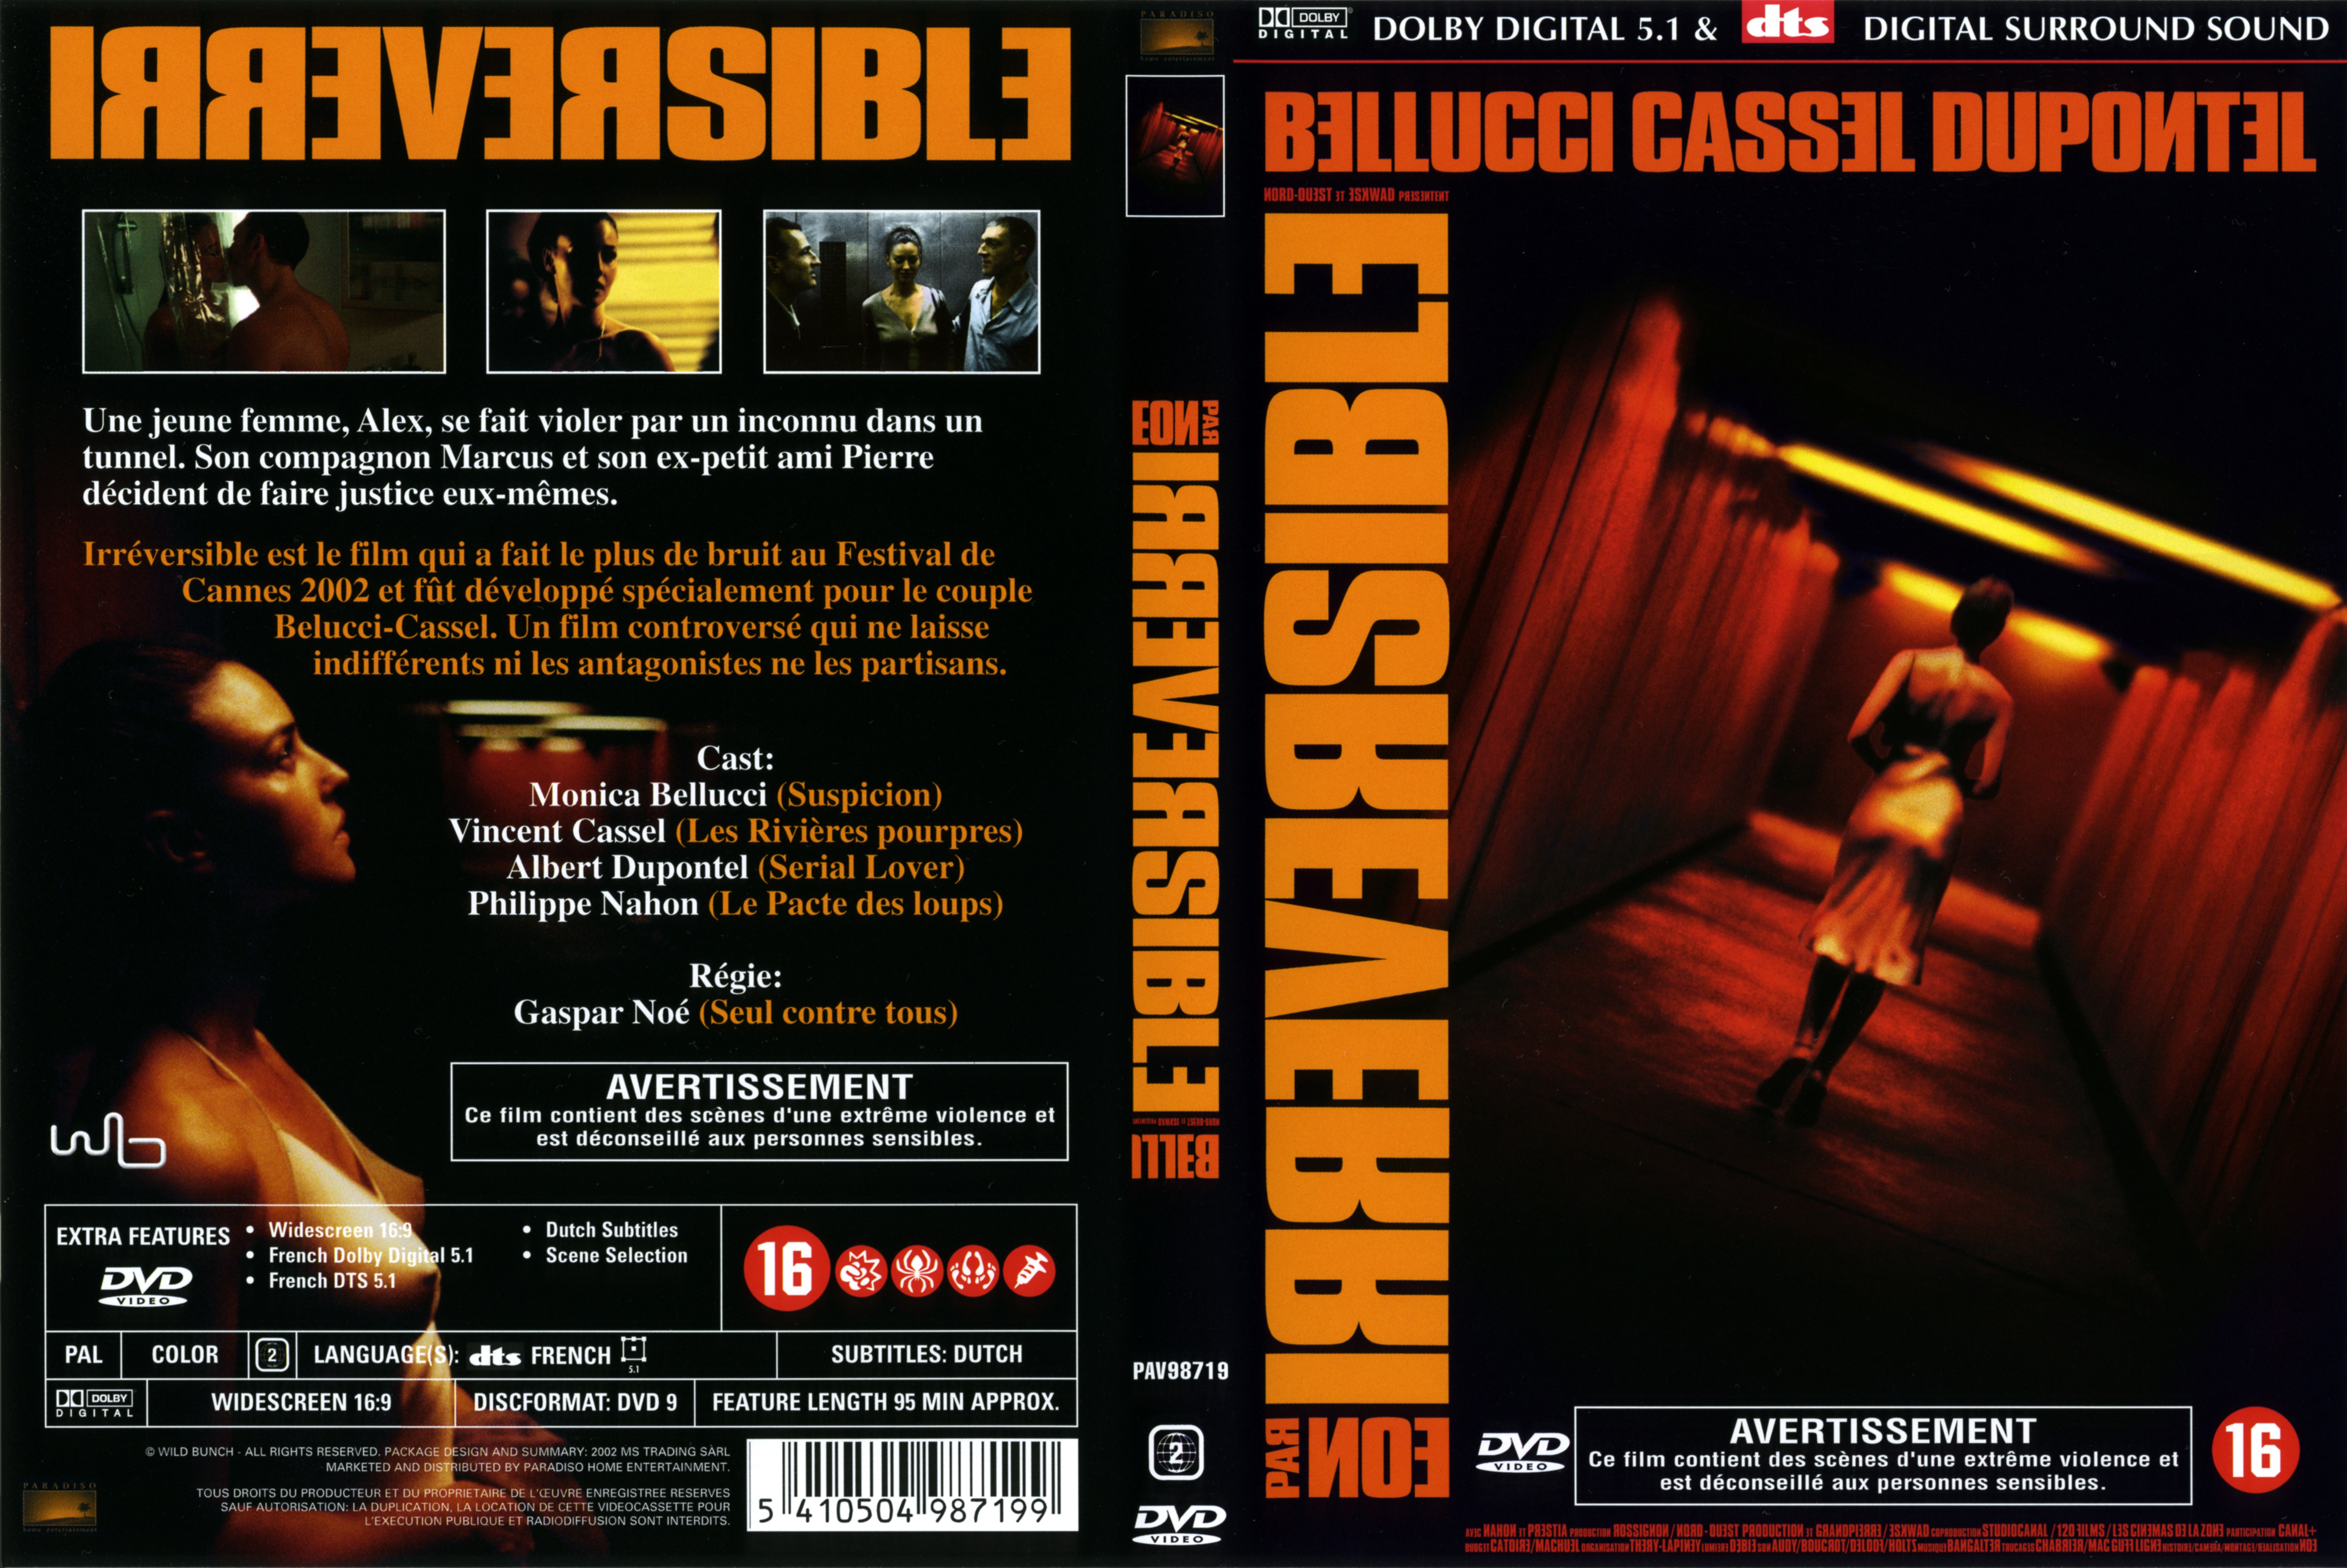 Jaquette DVD Irreversible v2